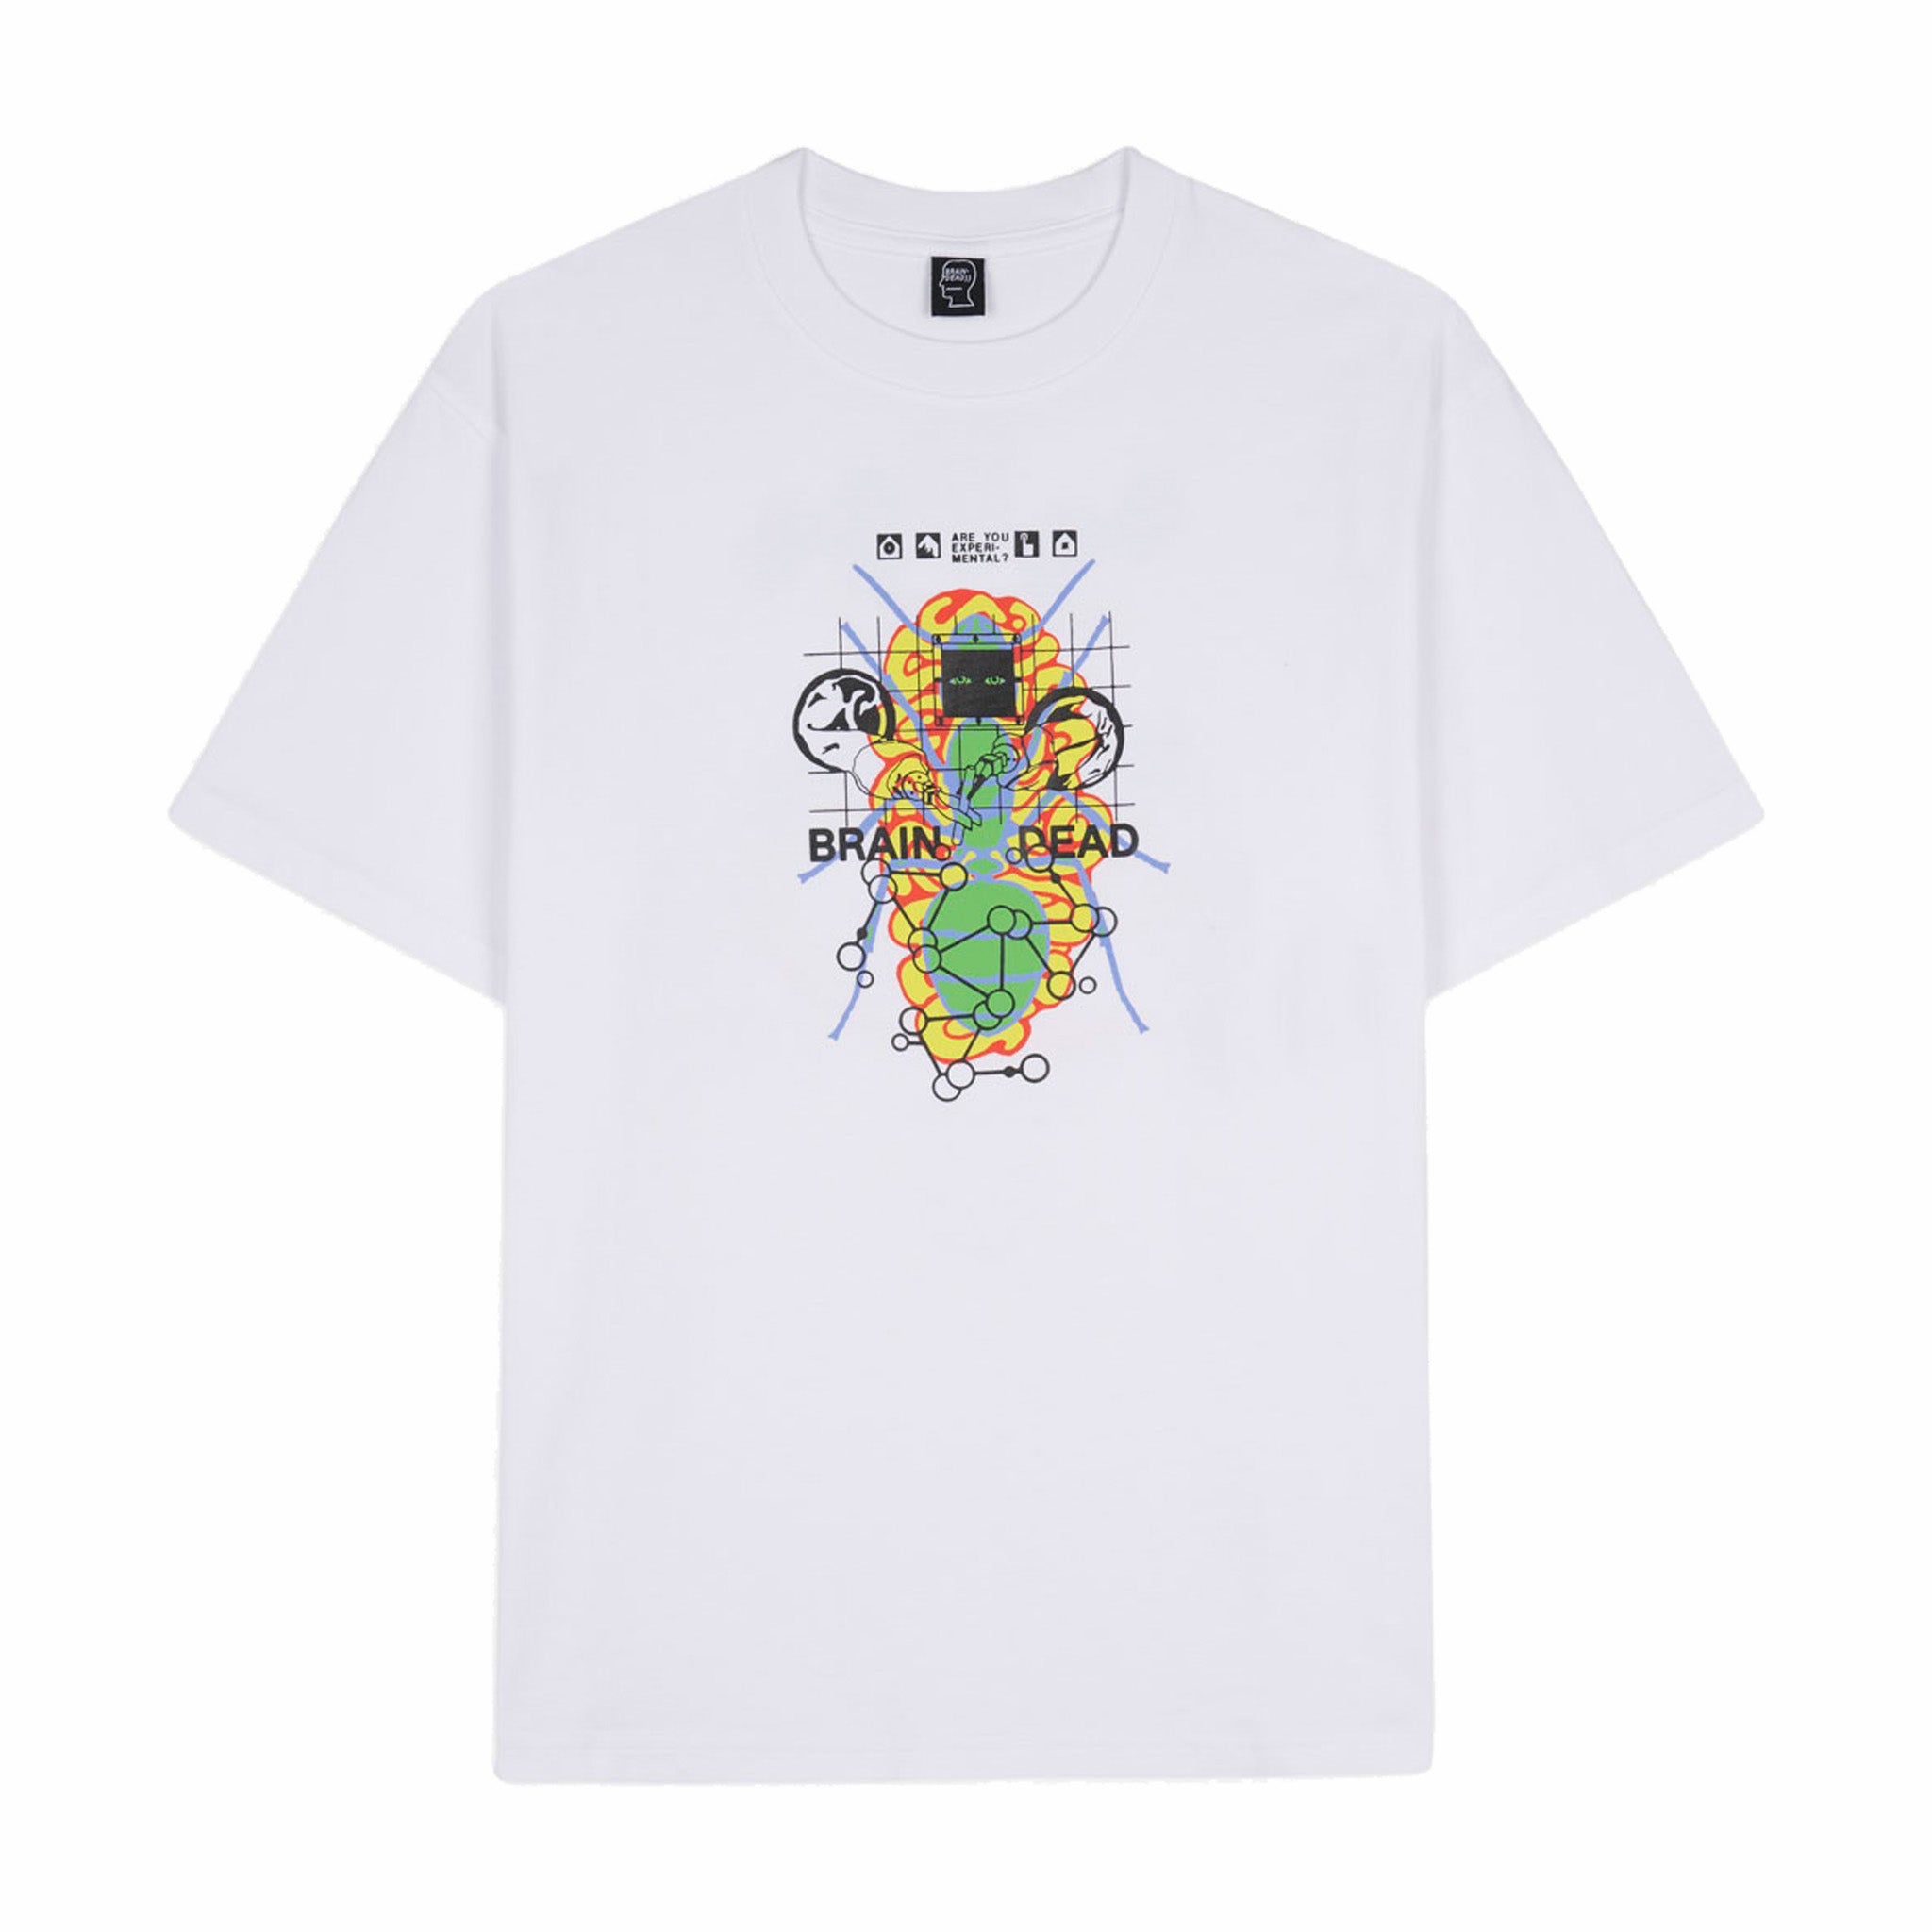 Brain Dead Future Sounds T-Shirt (White) - August Shop